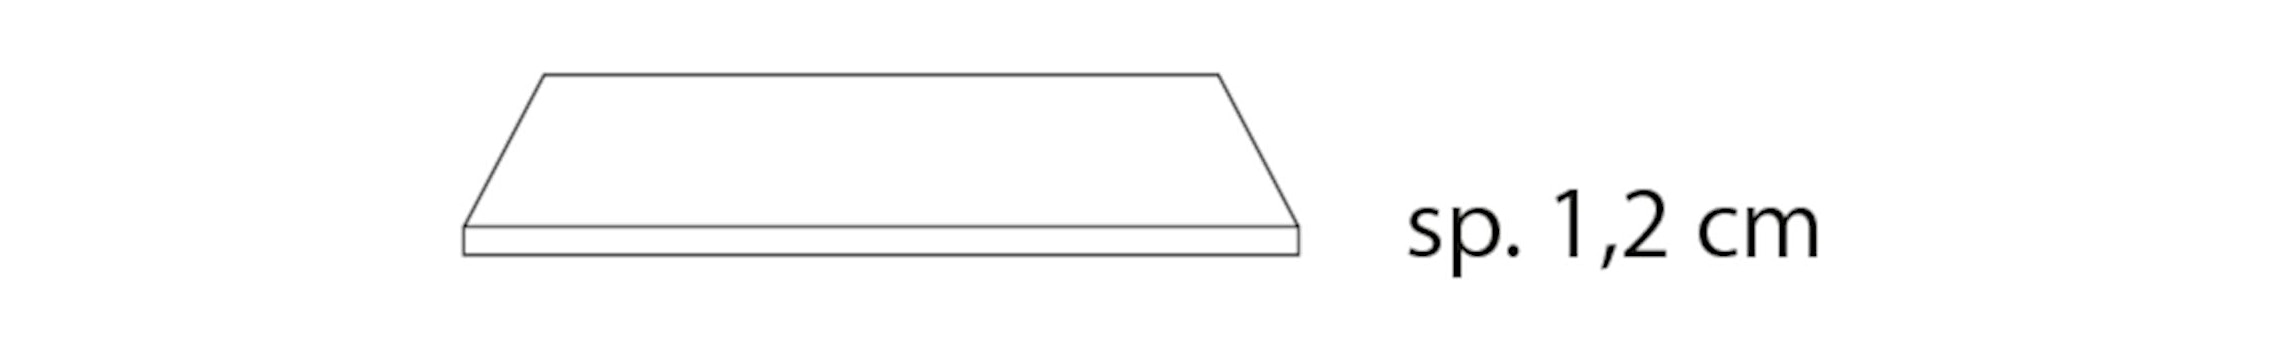 Nardi - Piano Tischplatte quadratisch 90 x 90 cm - 1